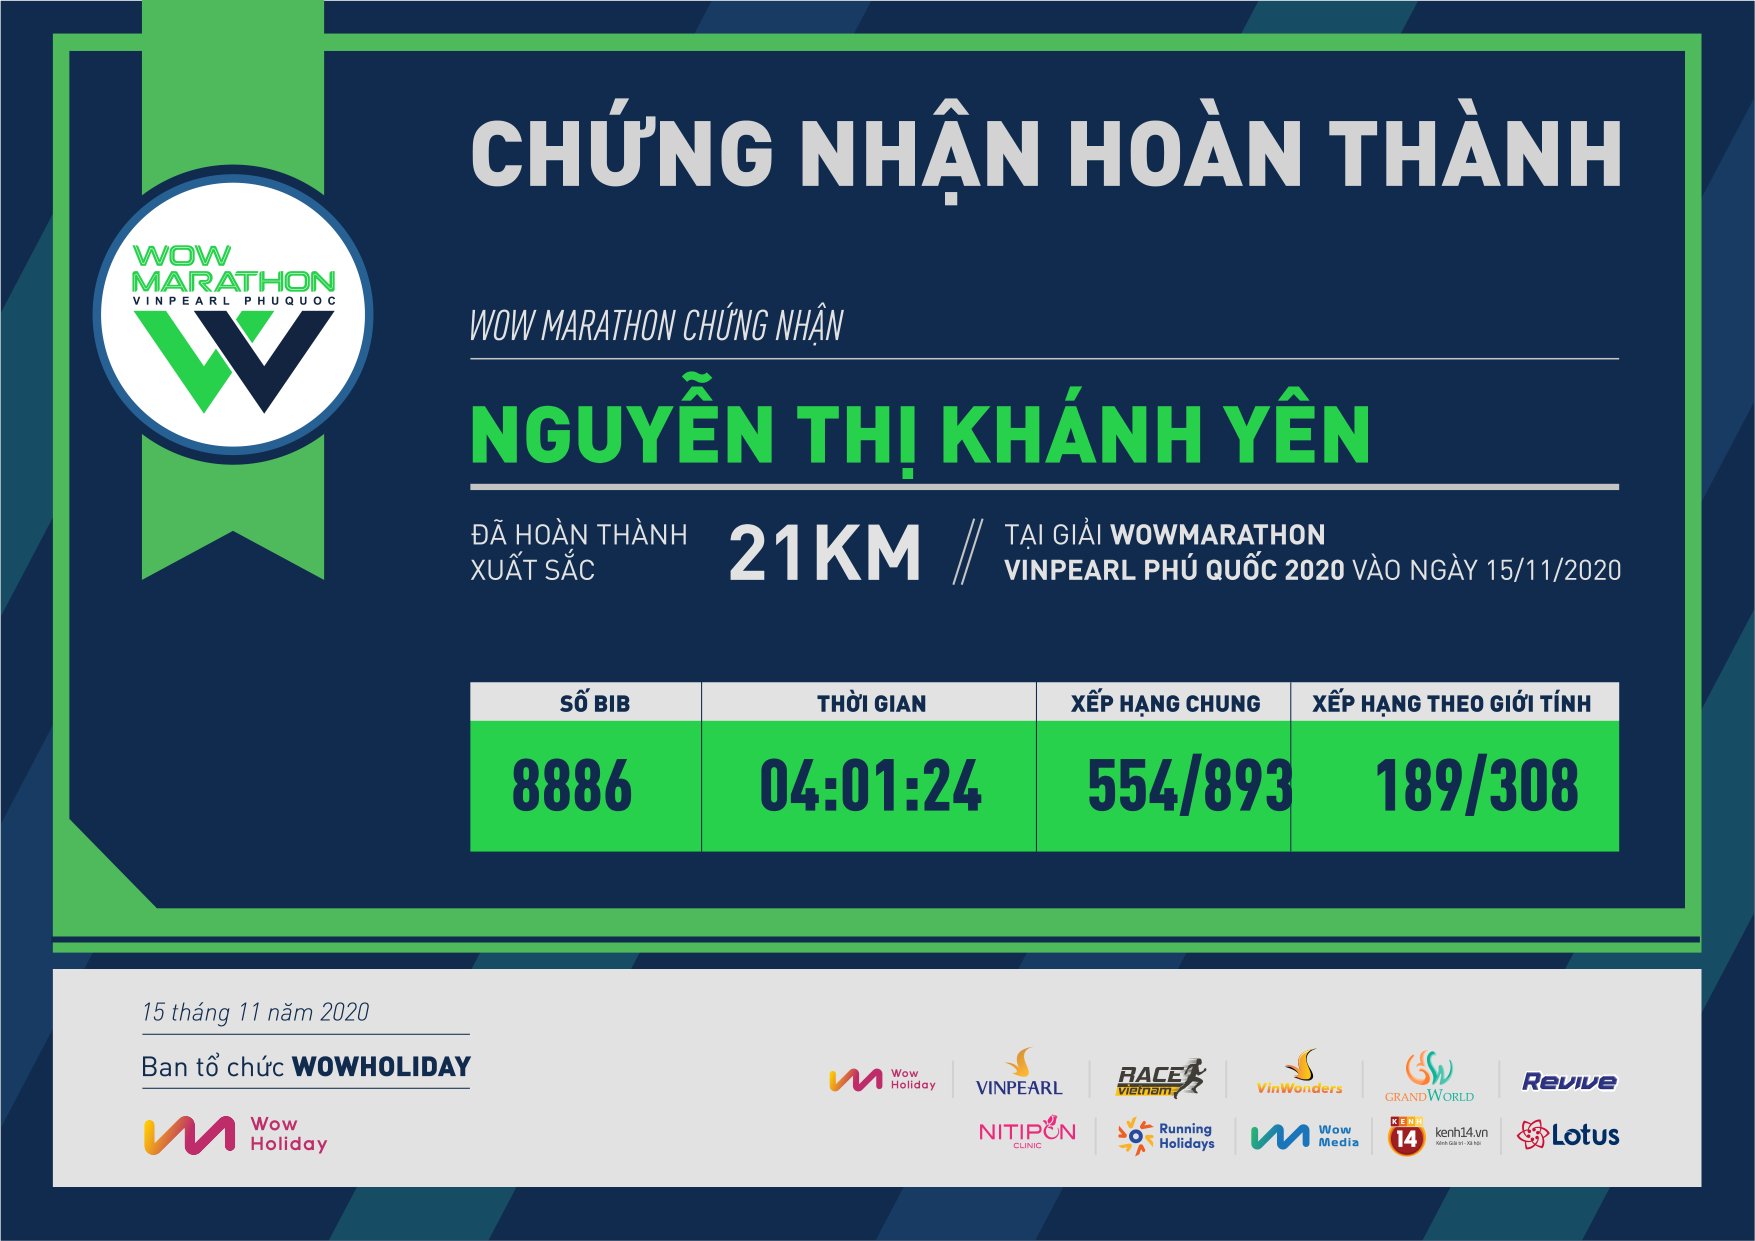 8886 - Nguyễn Thị Khánh Yên